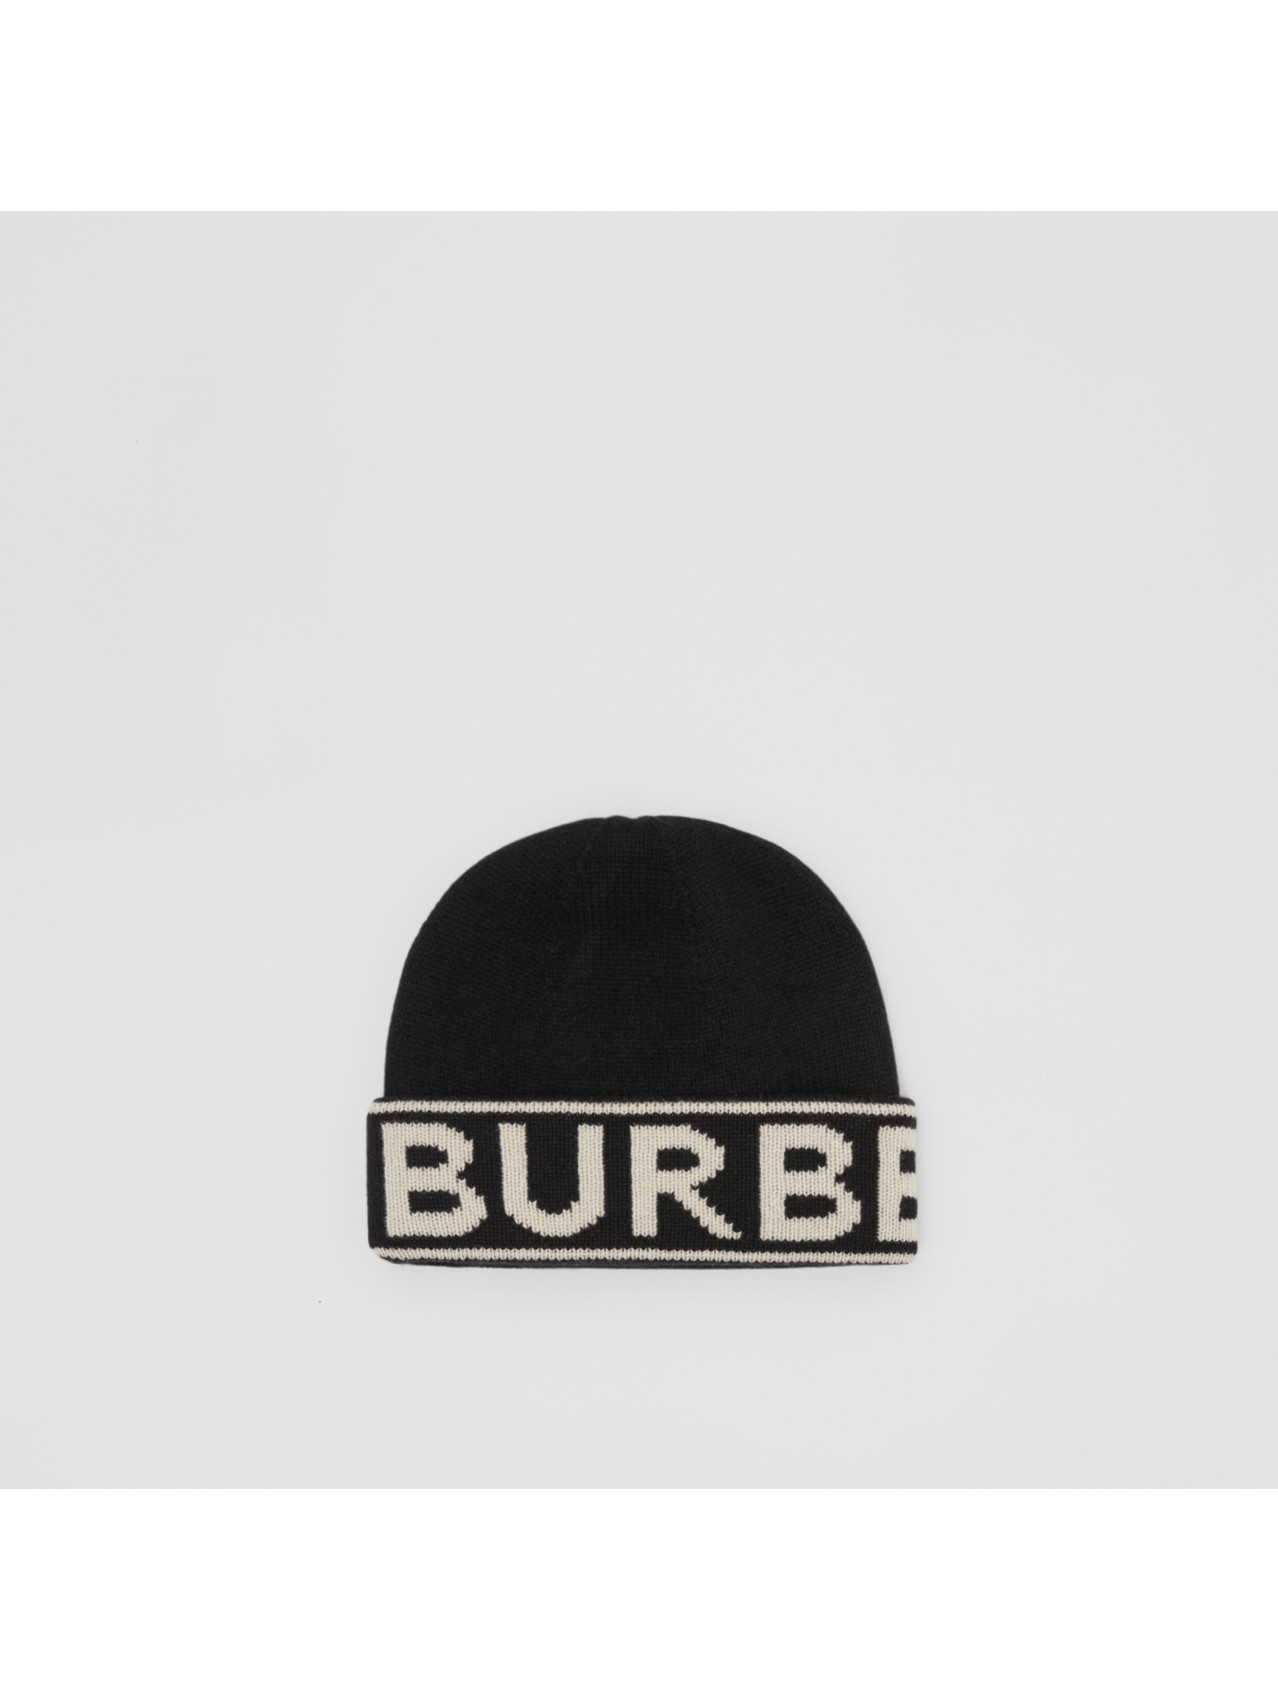 Actualizar 80+ imagen burberry mens winter hat